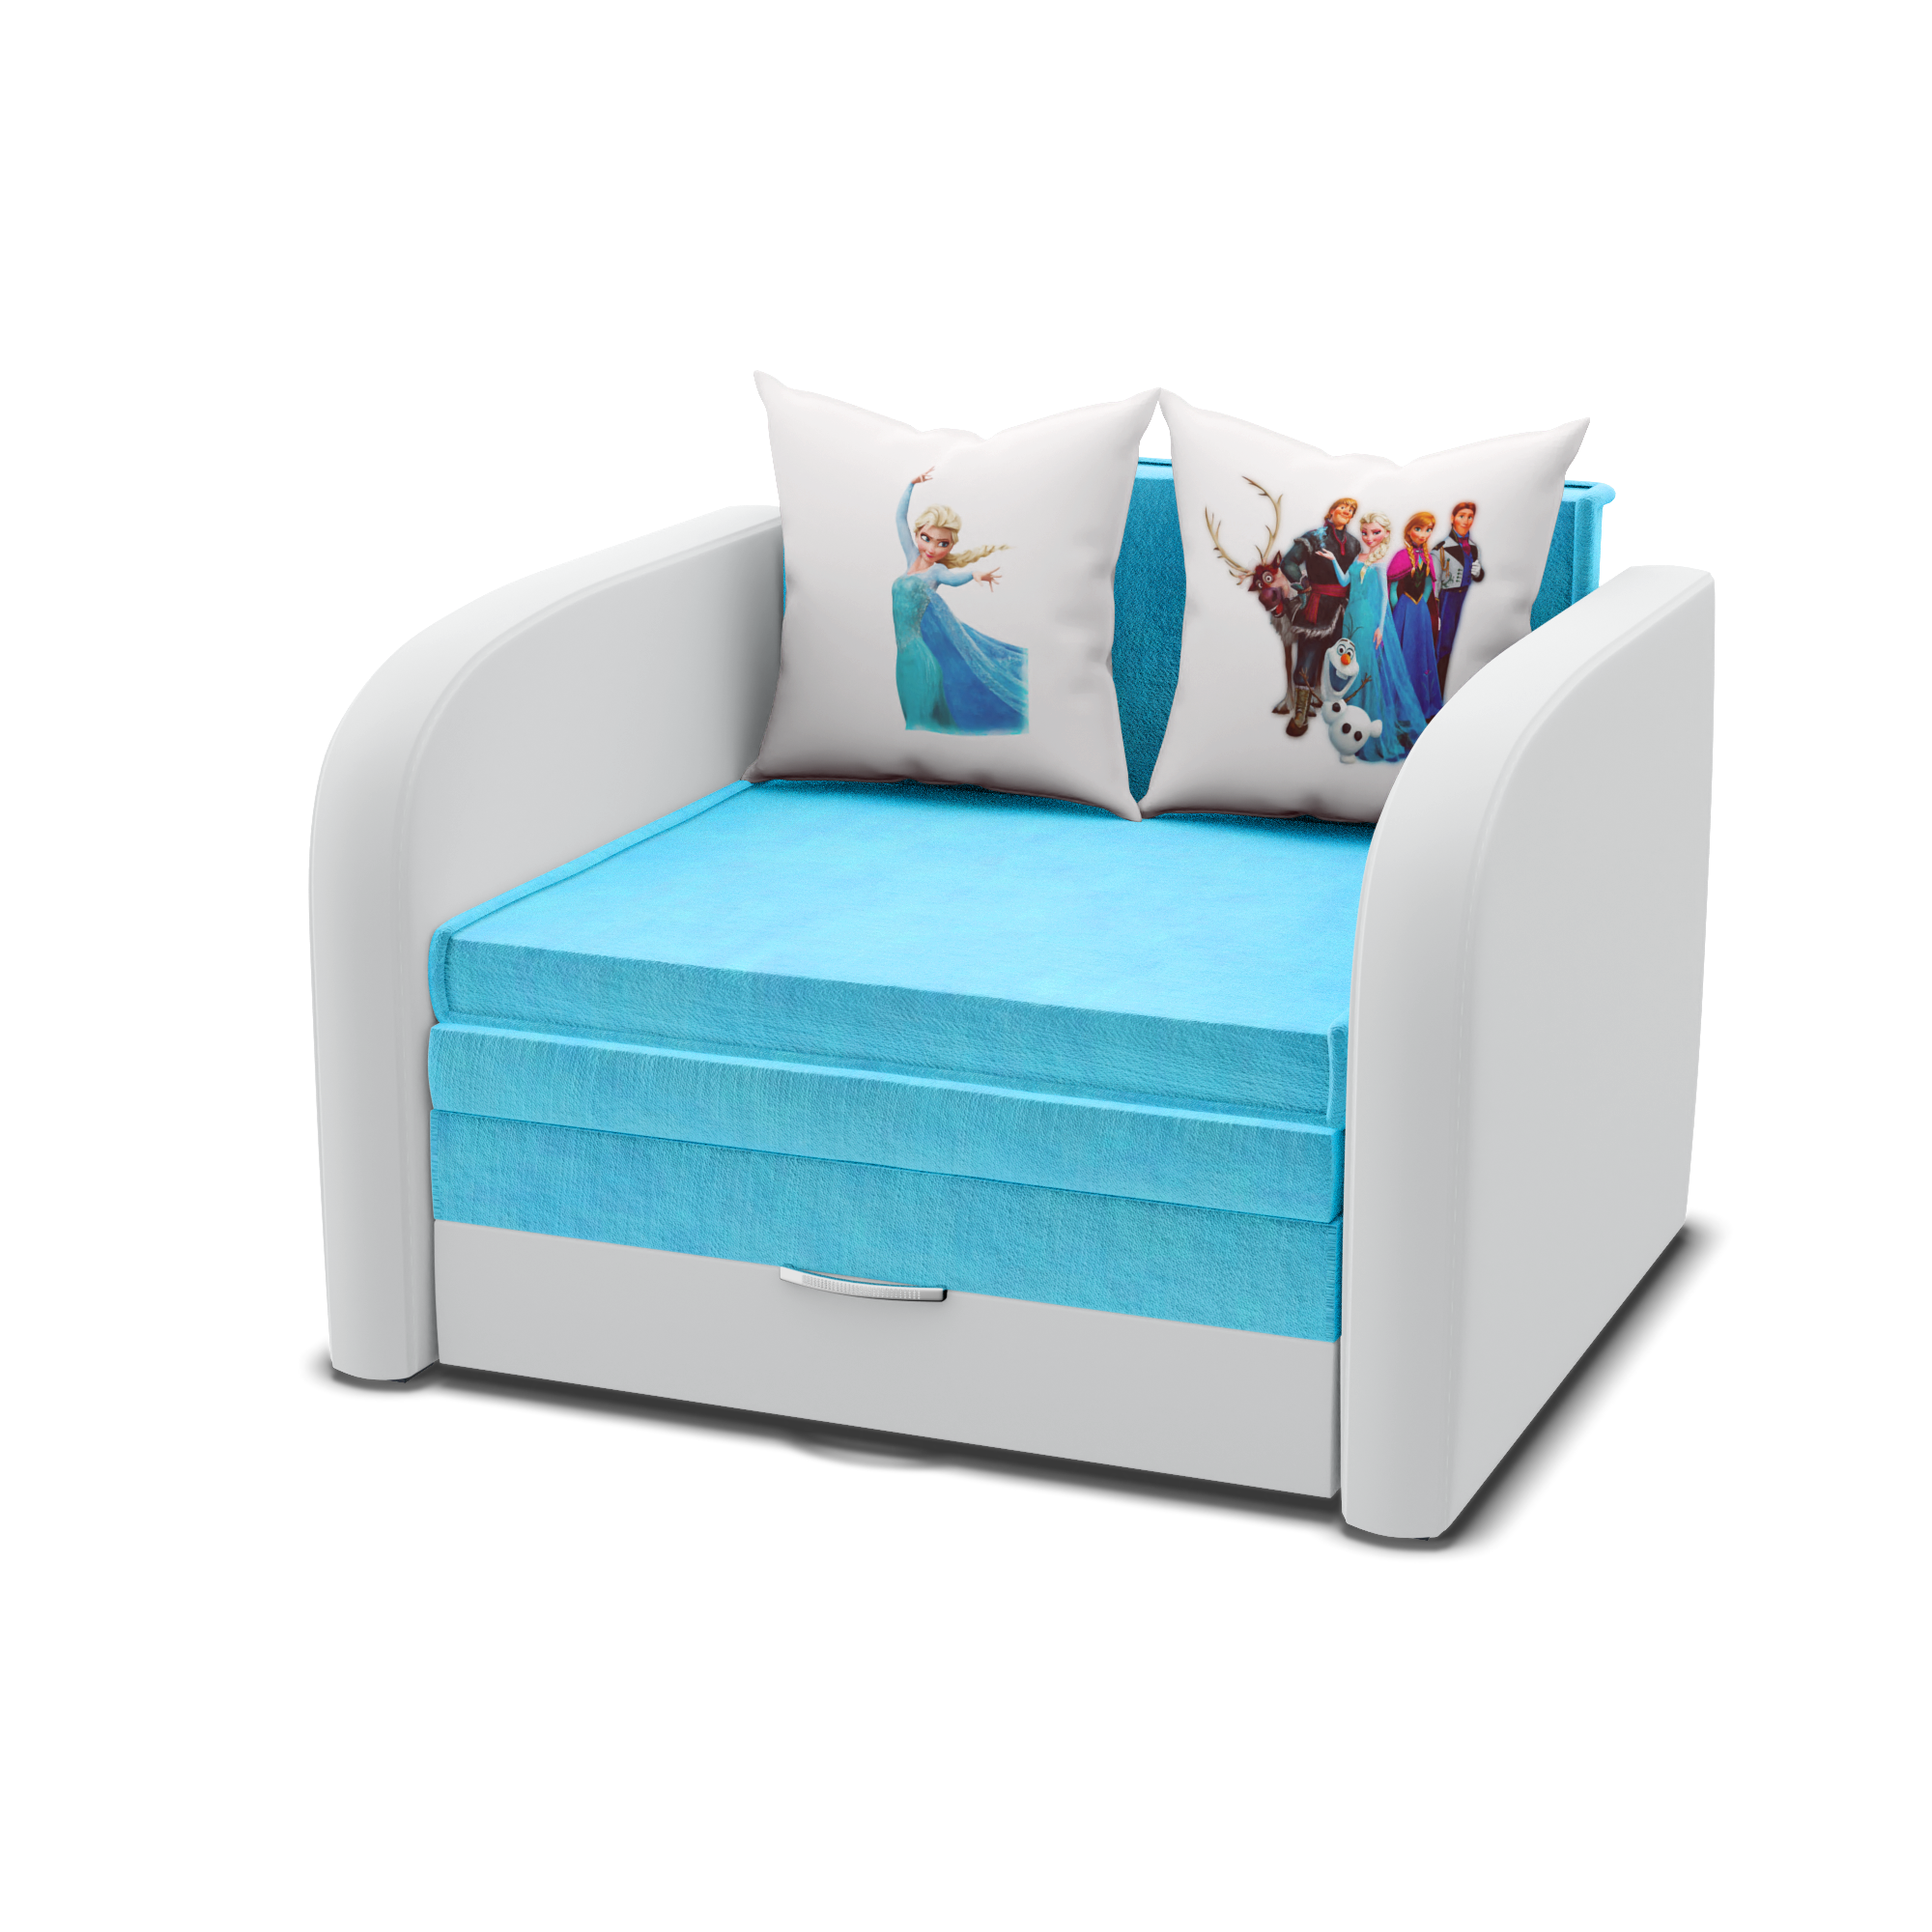 Компактный детский диван, диван-кровать "Мультик, принт холодное сердце", ширина 135см.